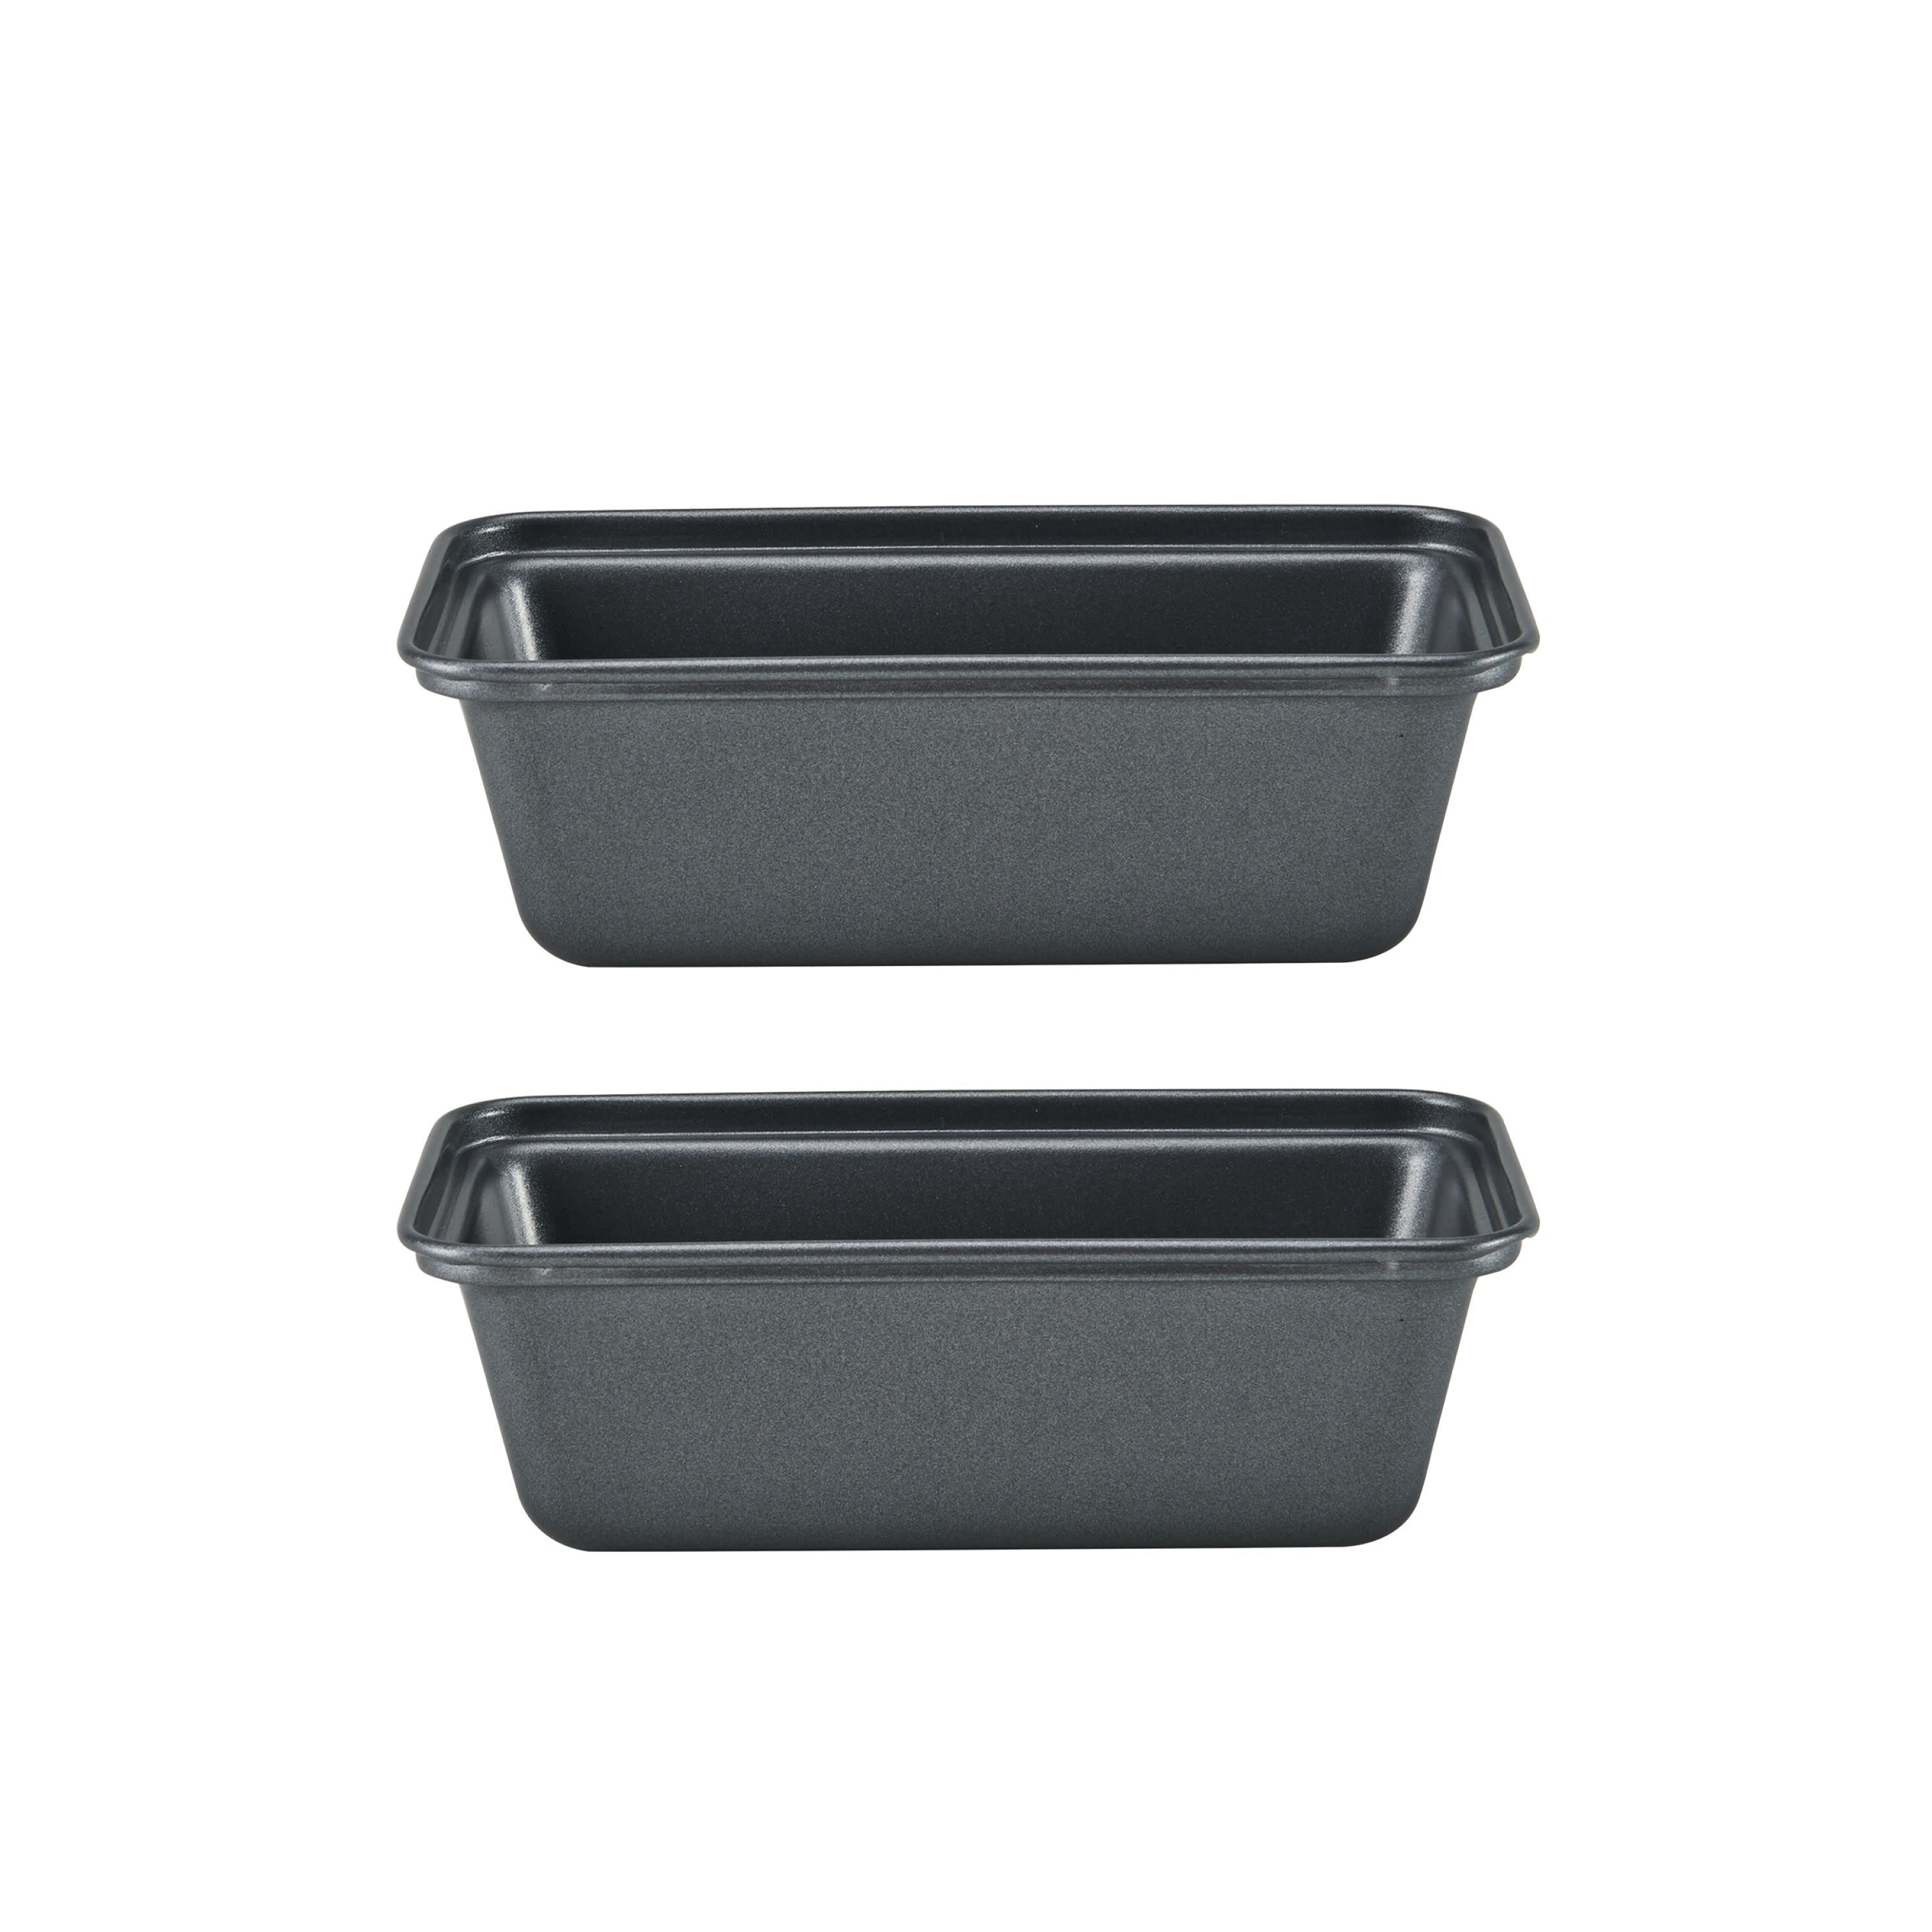 Instant Pot Set of 2 Mini Loaf Pans Black 5252185 - Best Buy